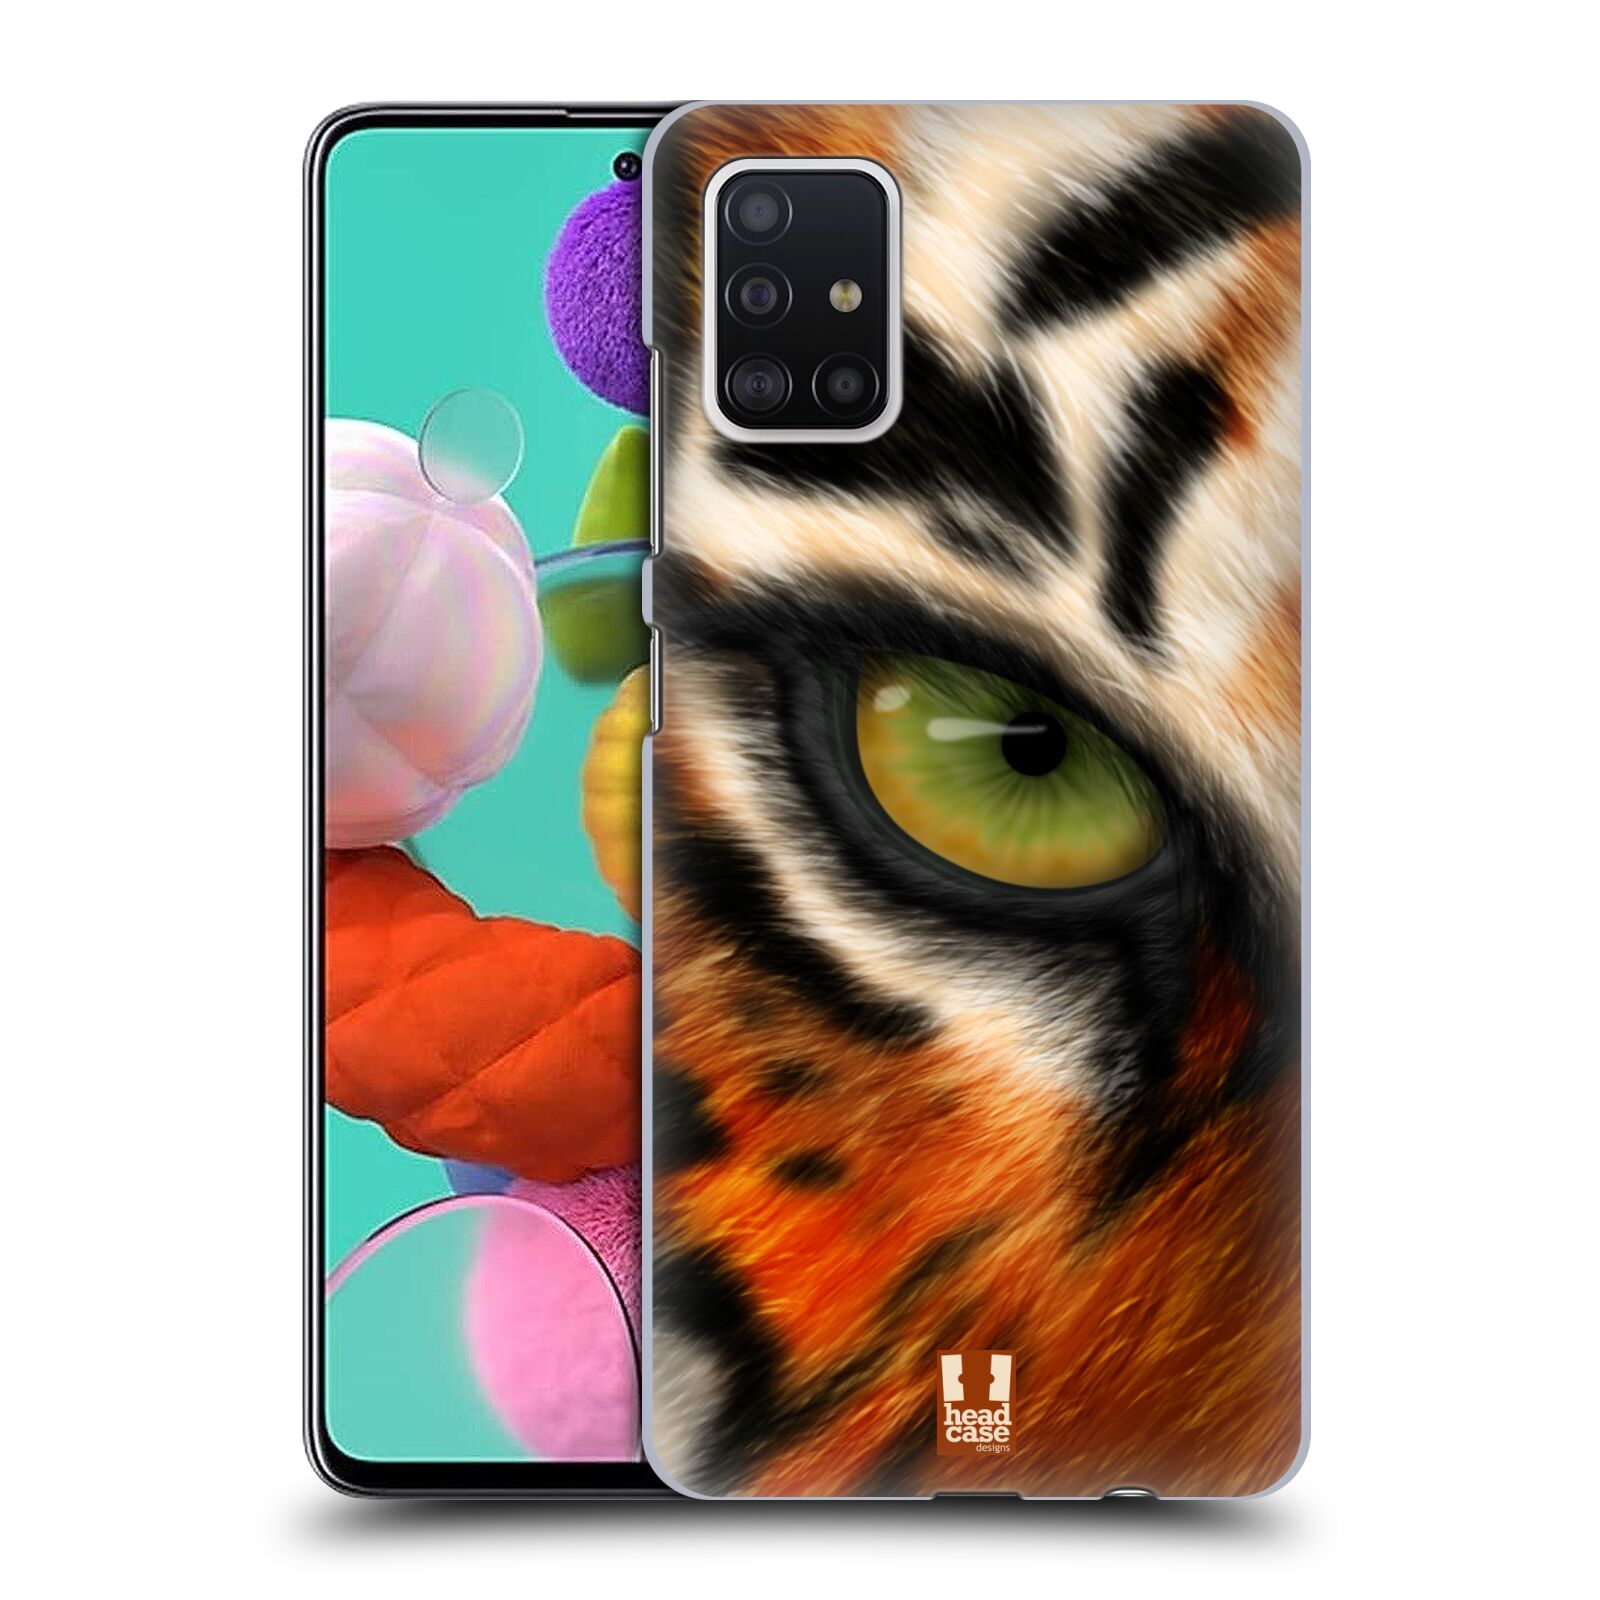 Pouzdro na mobil Samsung Galaxy A51 - HEAD CASE - vzor pohled zvířete oko tygr